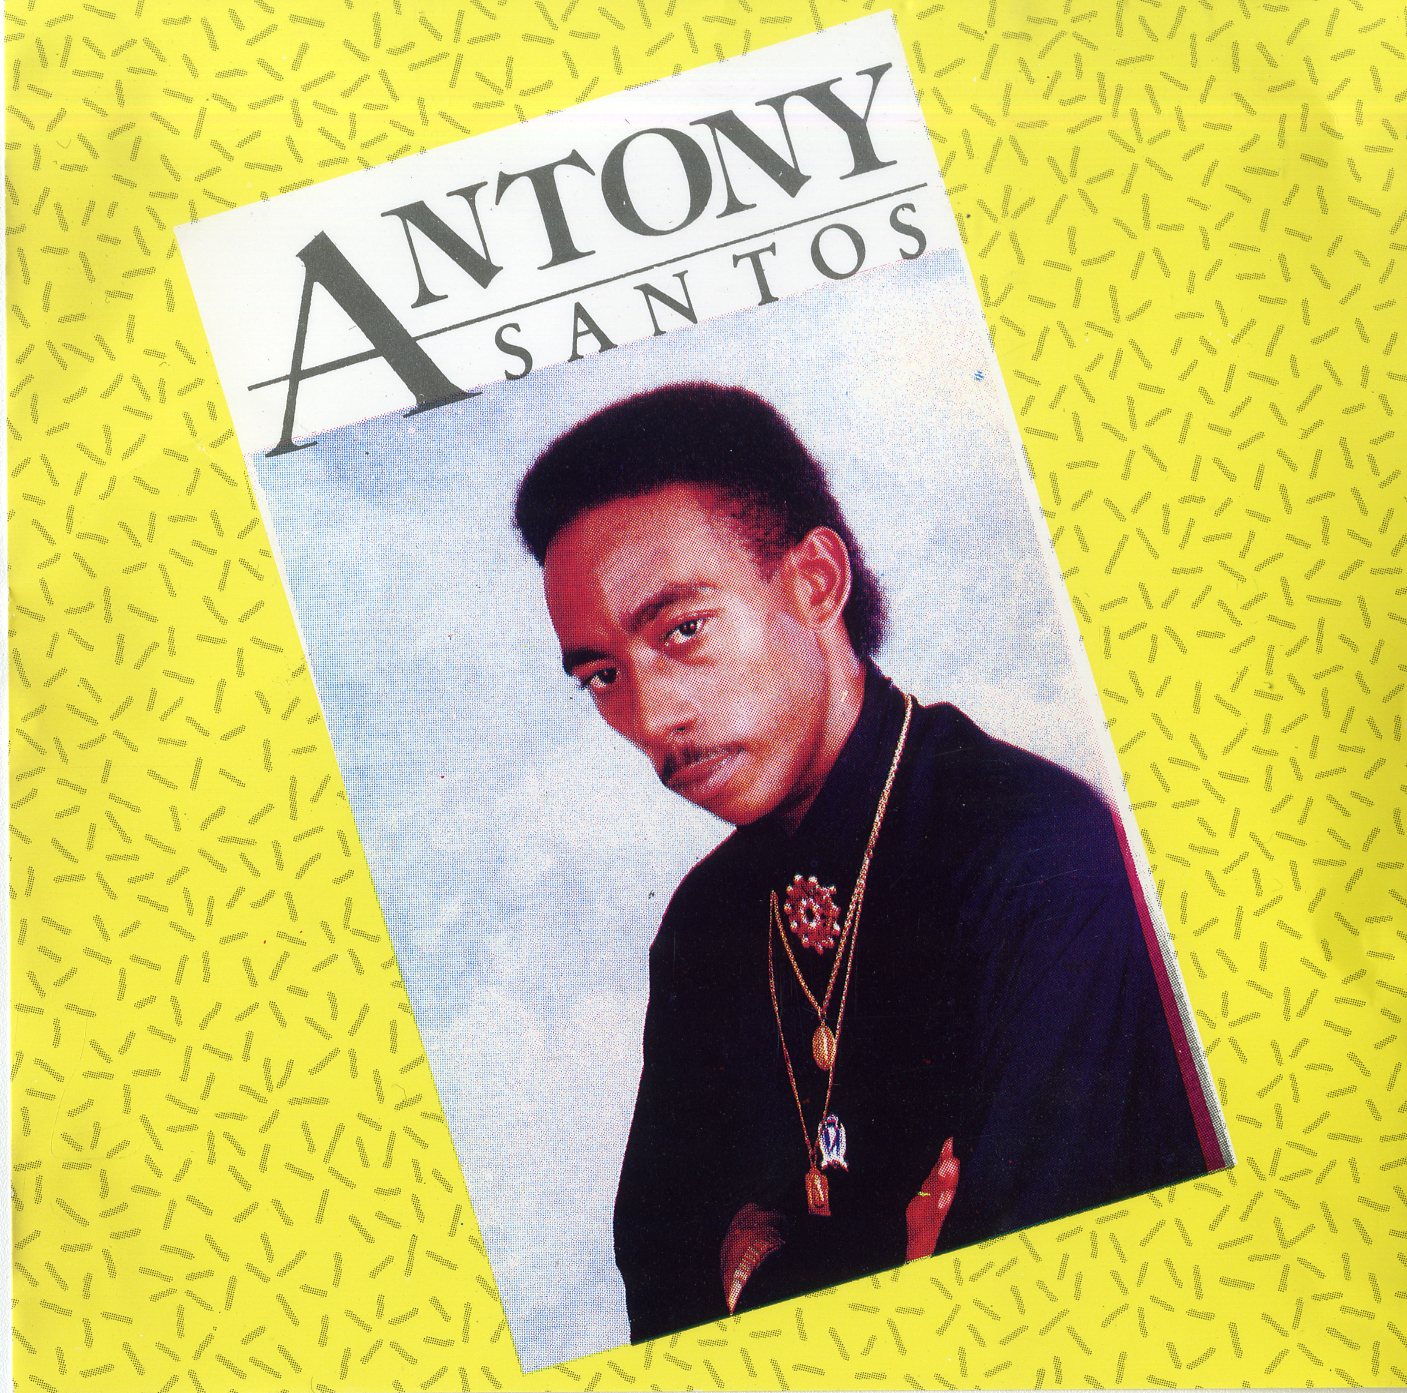 Antony Santos "La Chupadera" album cover, 1992